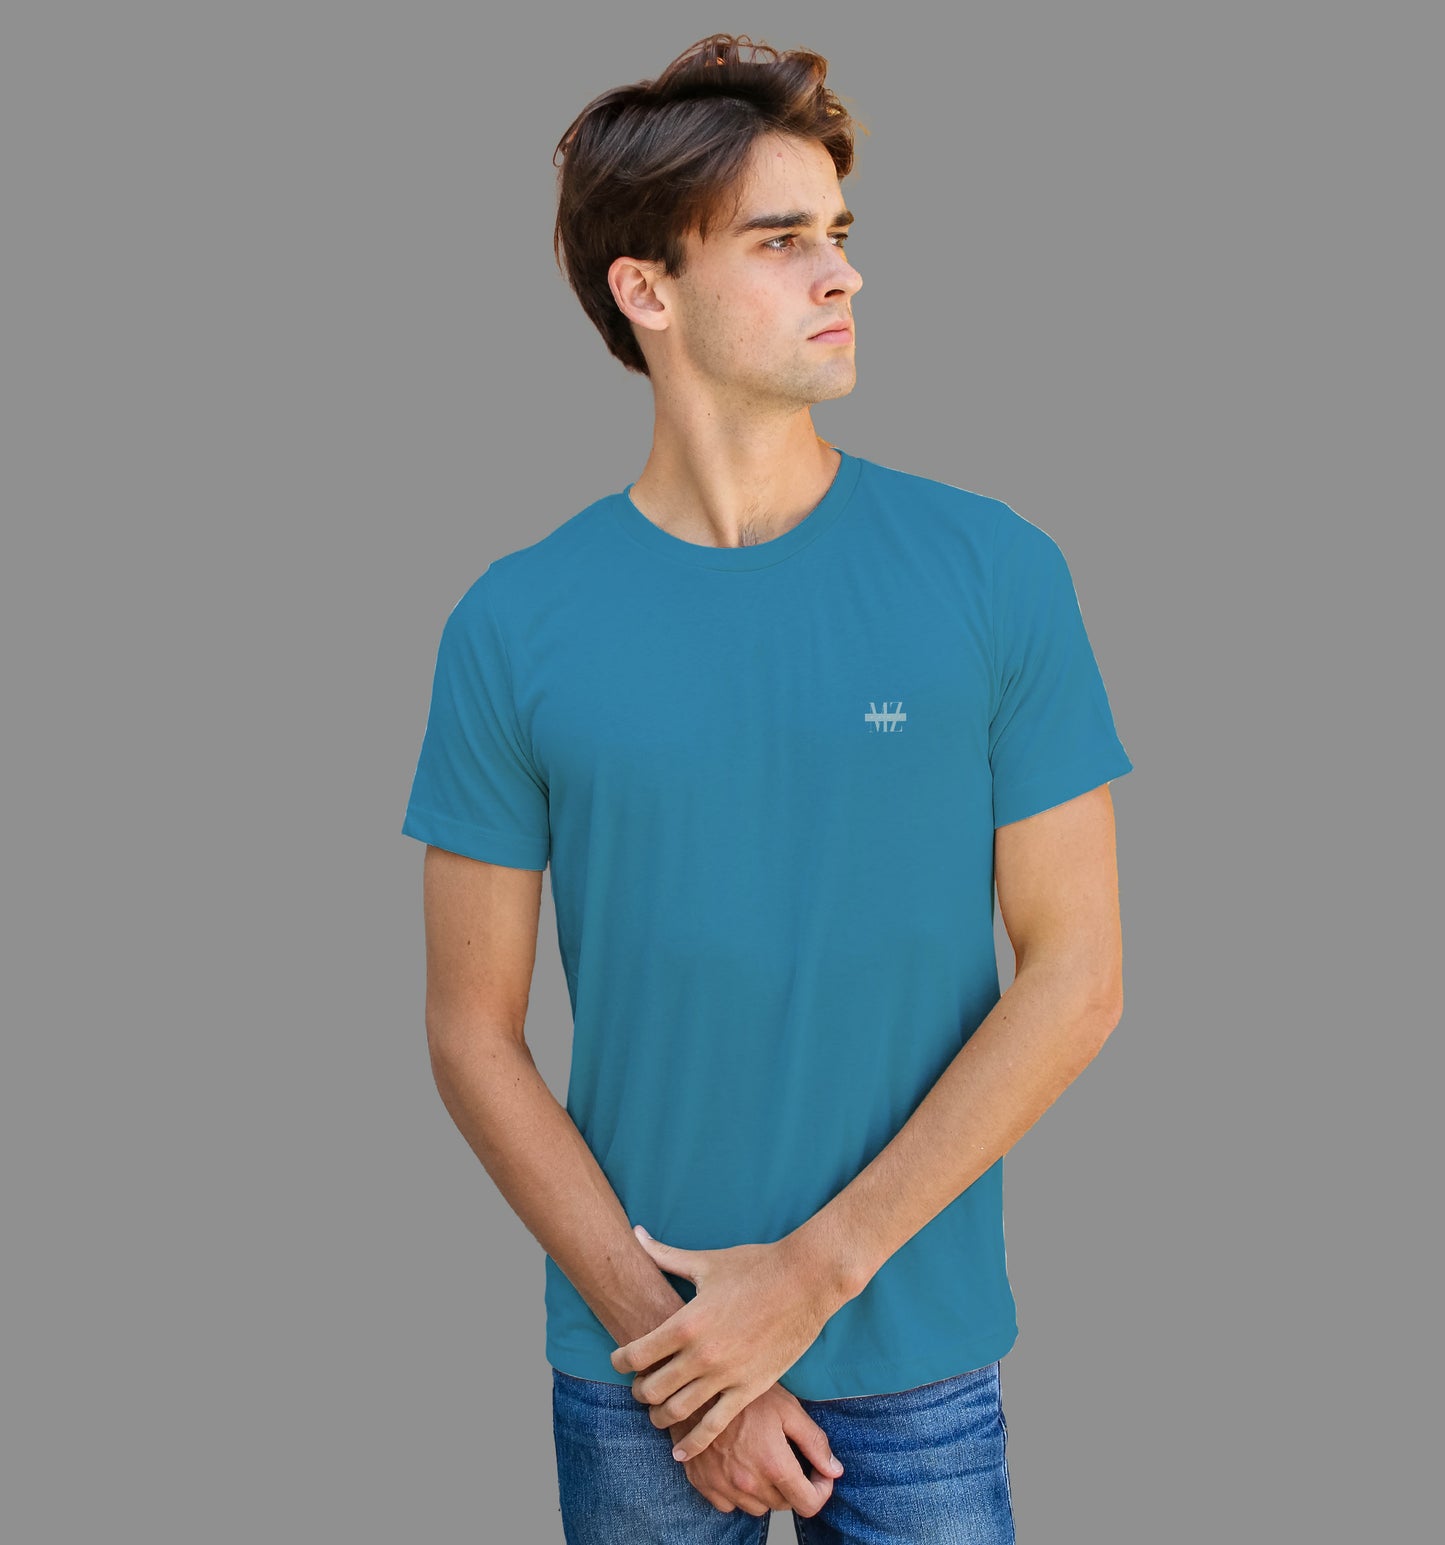 Steel Blue T-Shirt In Plain - Mon Zurich Originals